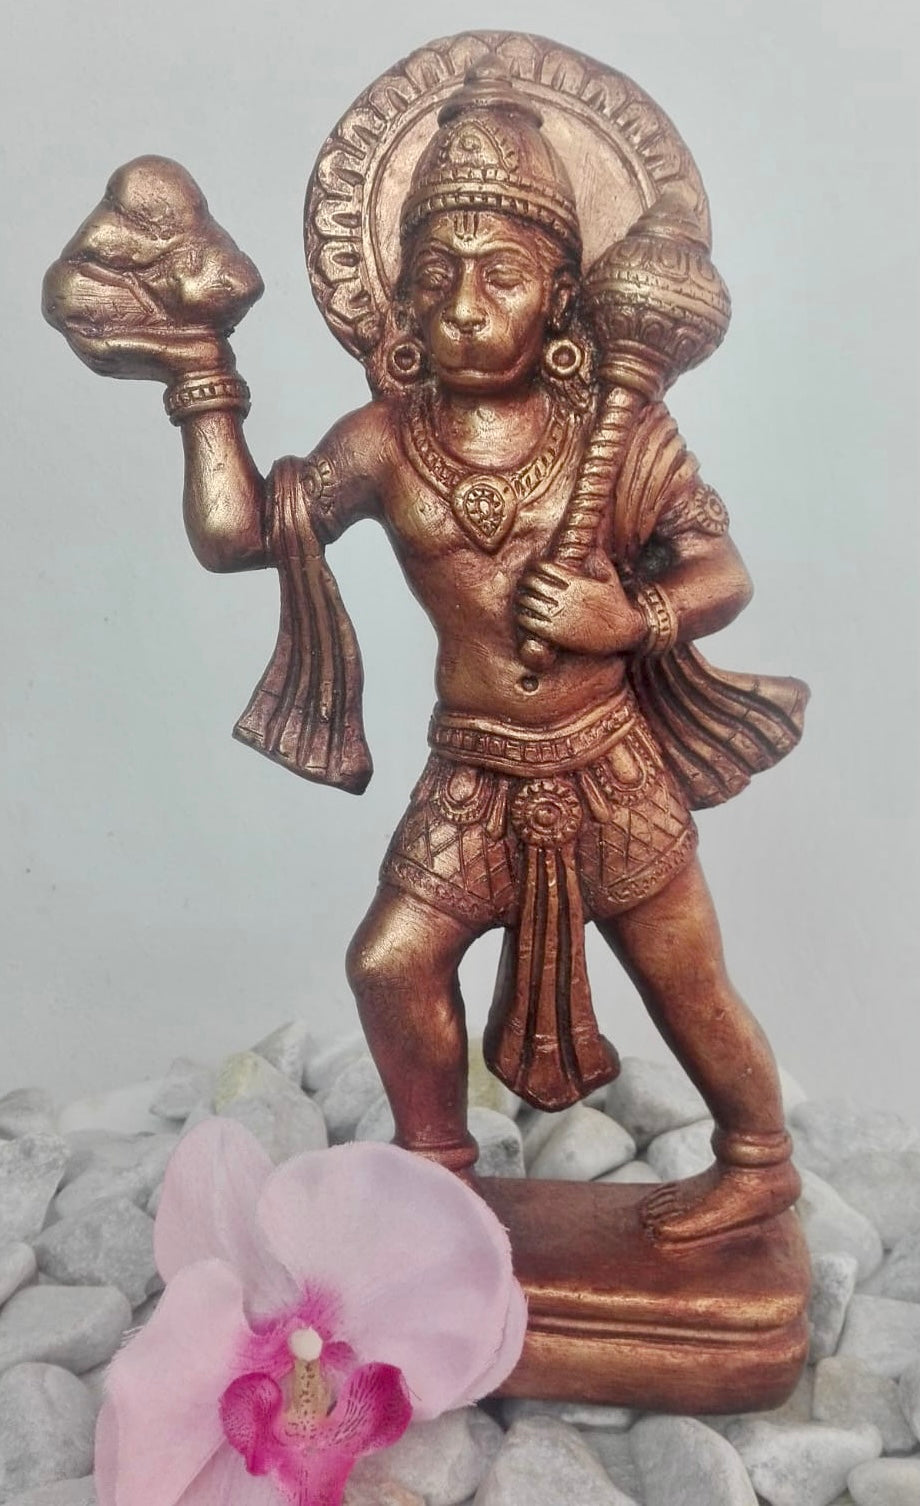 Hanuman carrying mountain